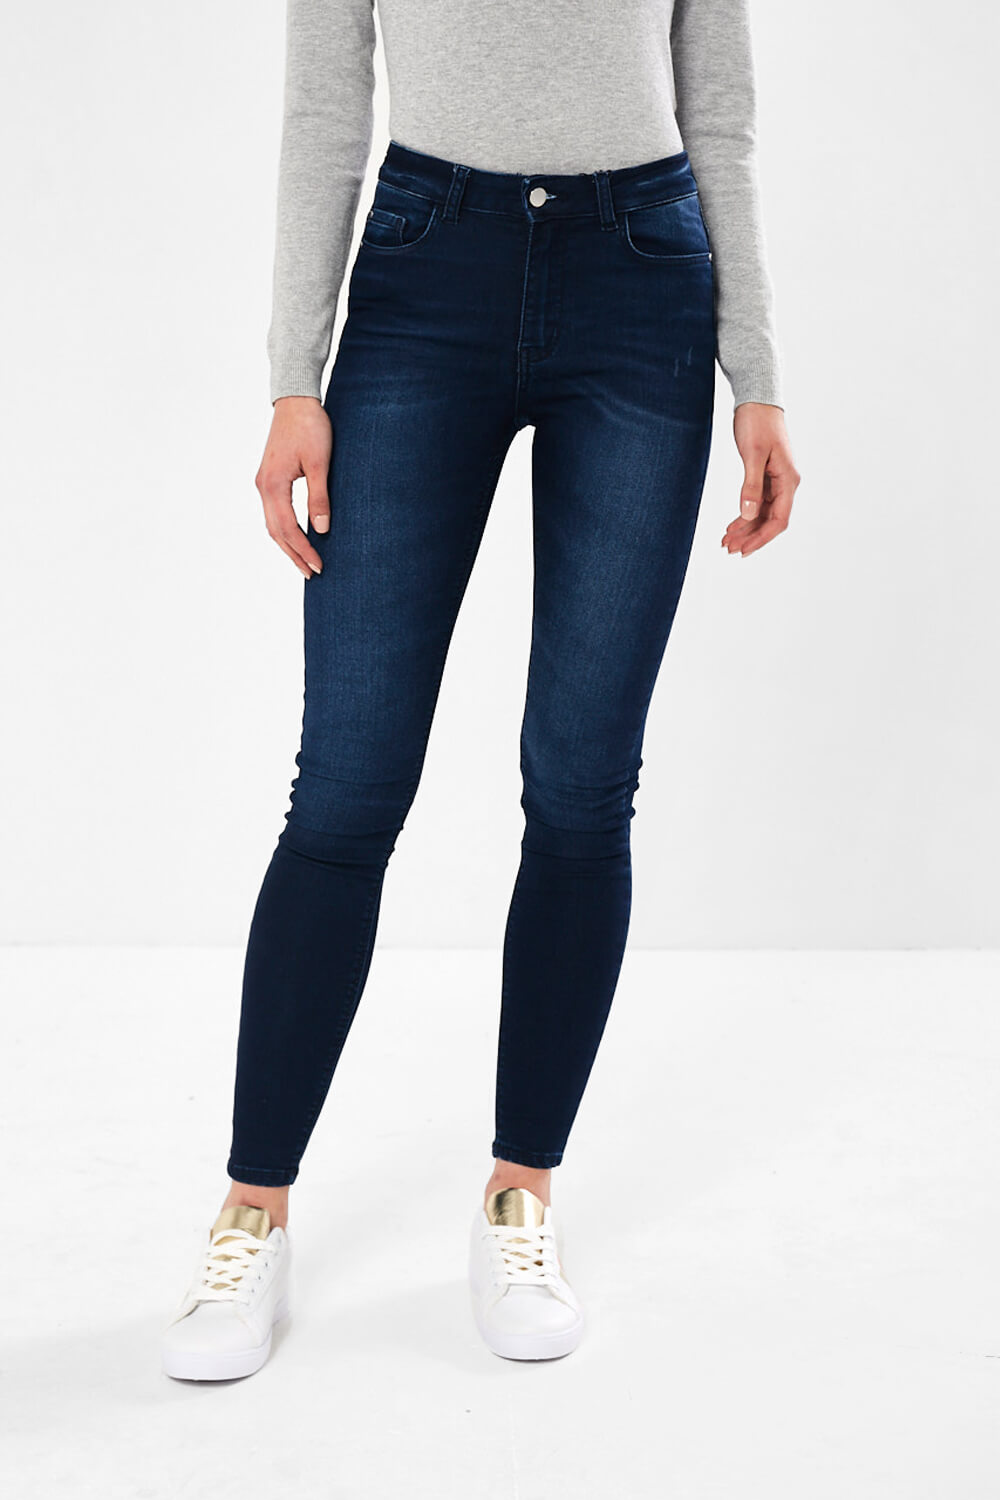 JDY Nikki High Rise Dark Denim Jeans | iCLOTHING - iCLOTHING